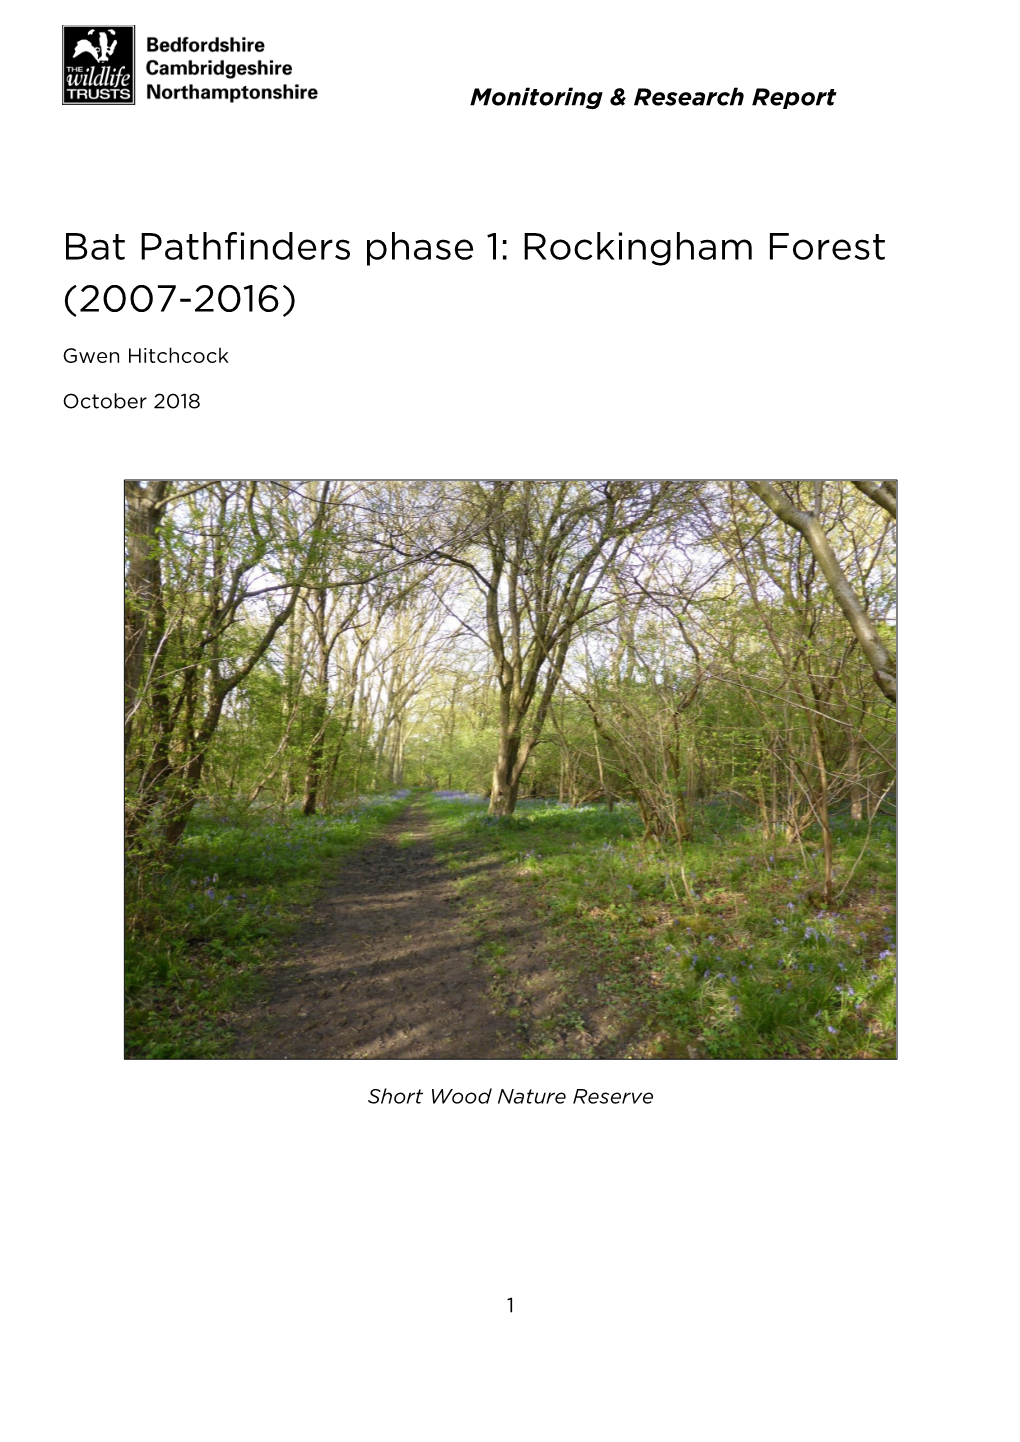 Bat Pathfinders Phase 1: Rockingham Forest (2007-2016)